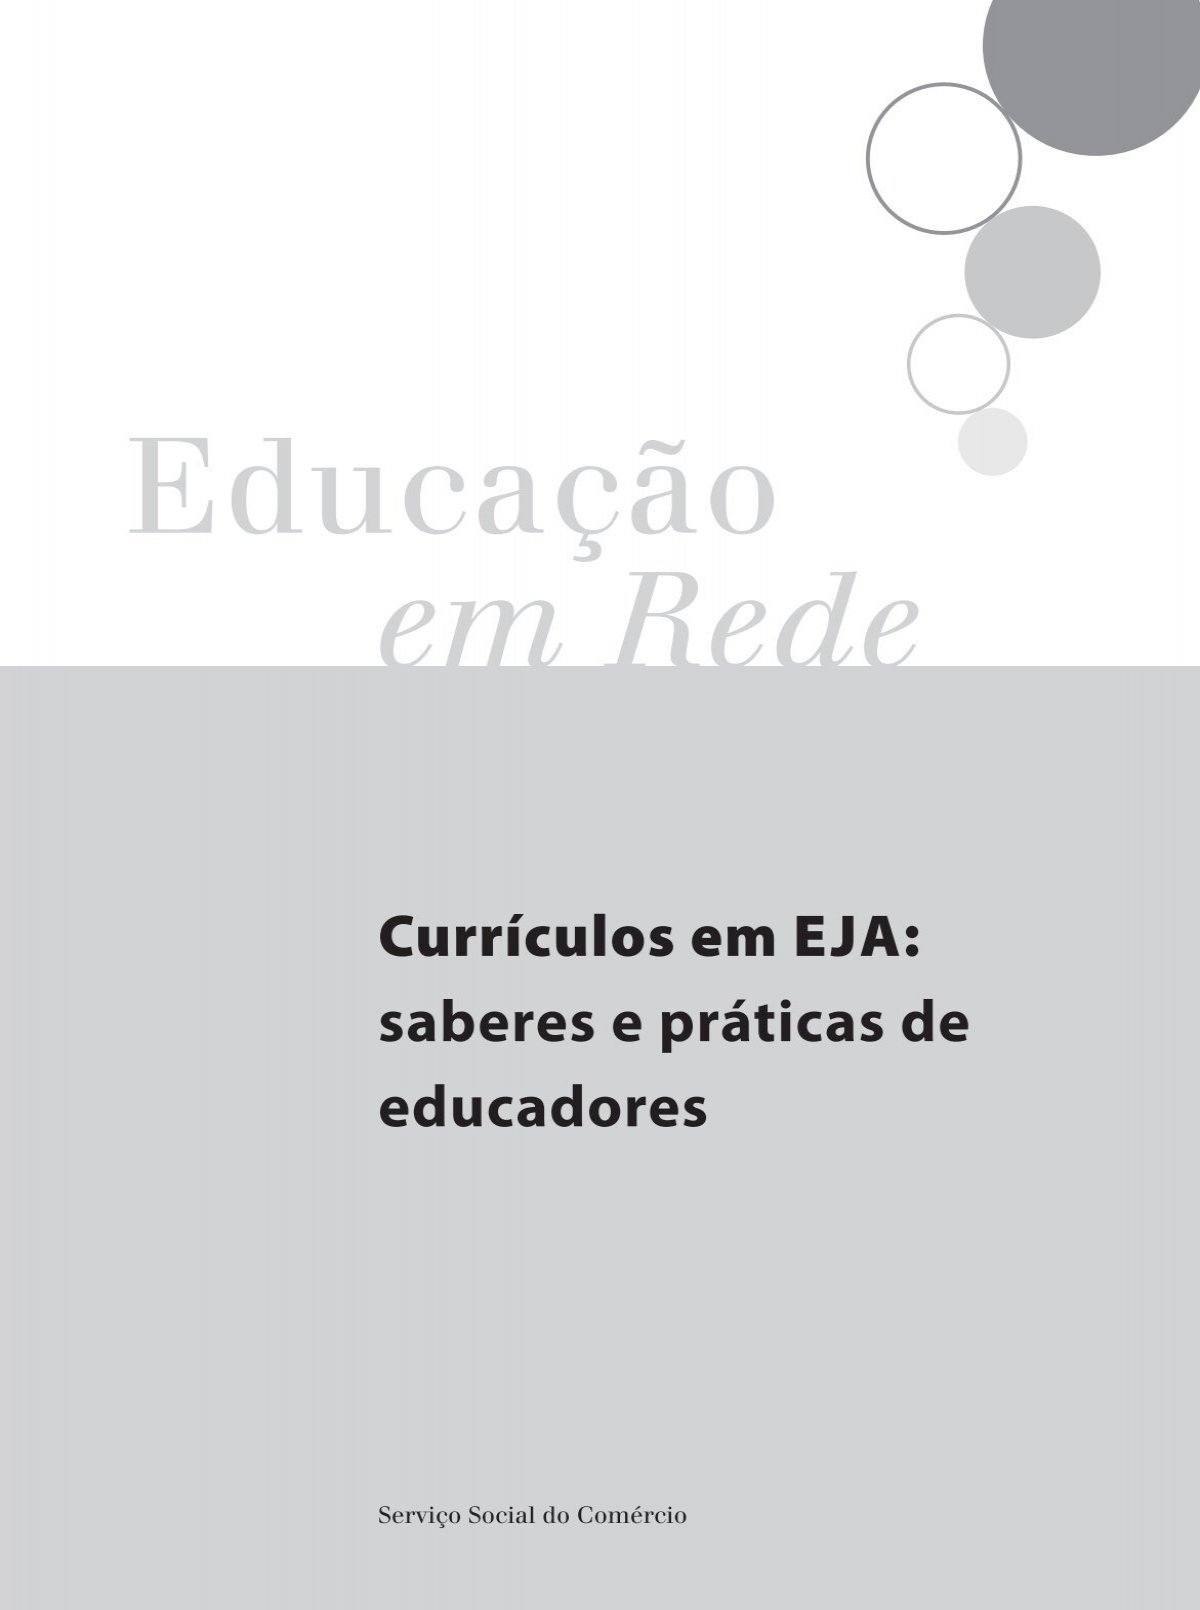 Conselho de Educandos e Educadores da EJA